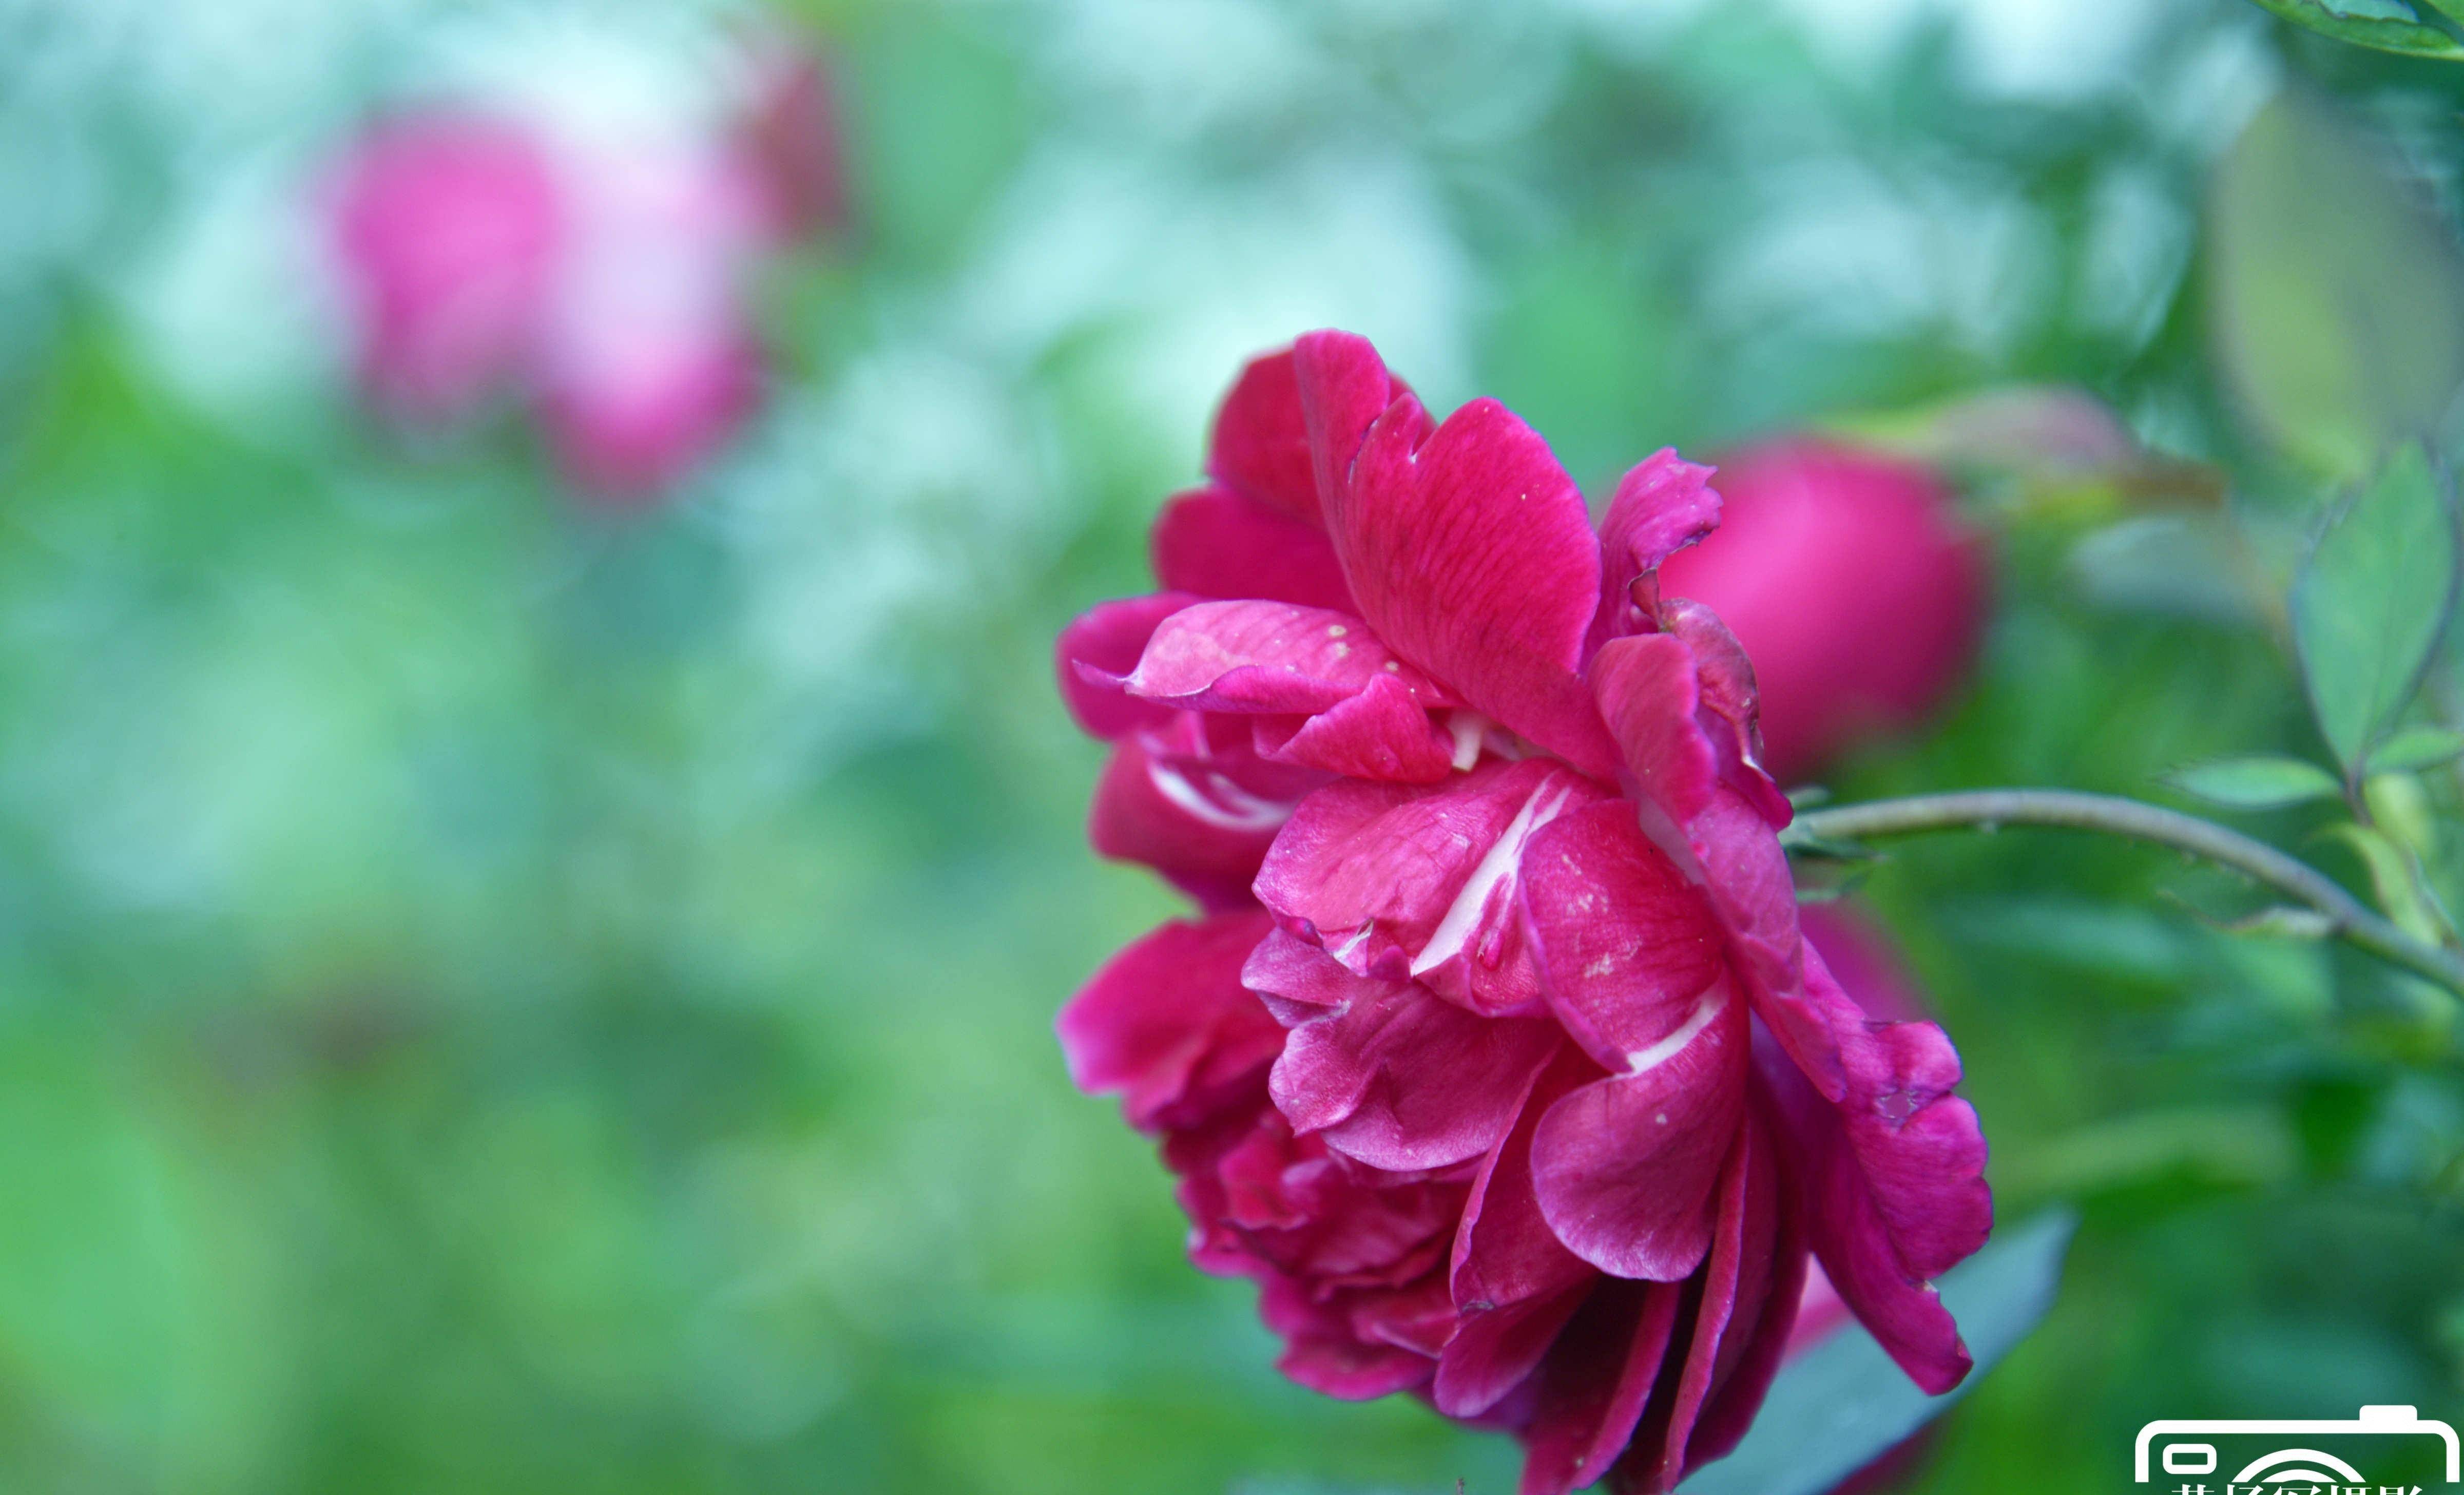 蔷薇花娇艳的迷人之美,绿叶中玫红色的花朵特漂亮,美如玫瑰